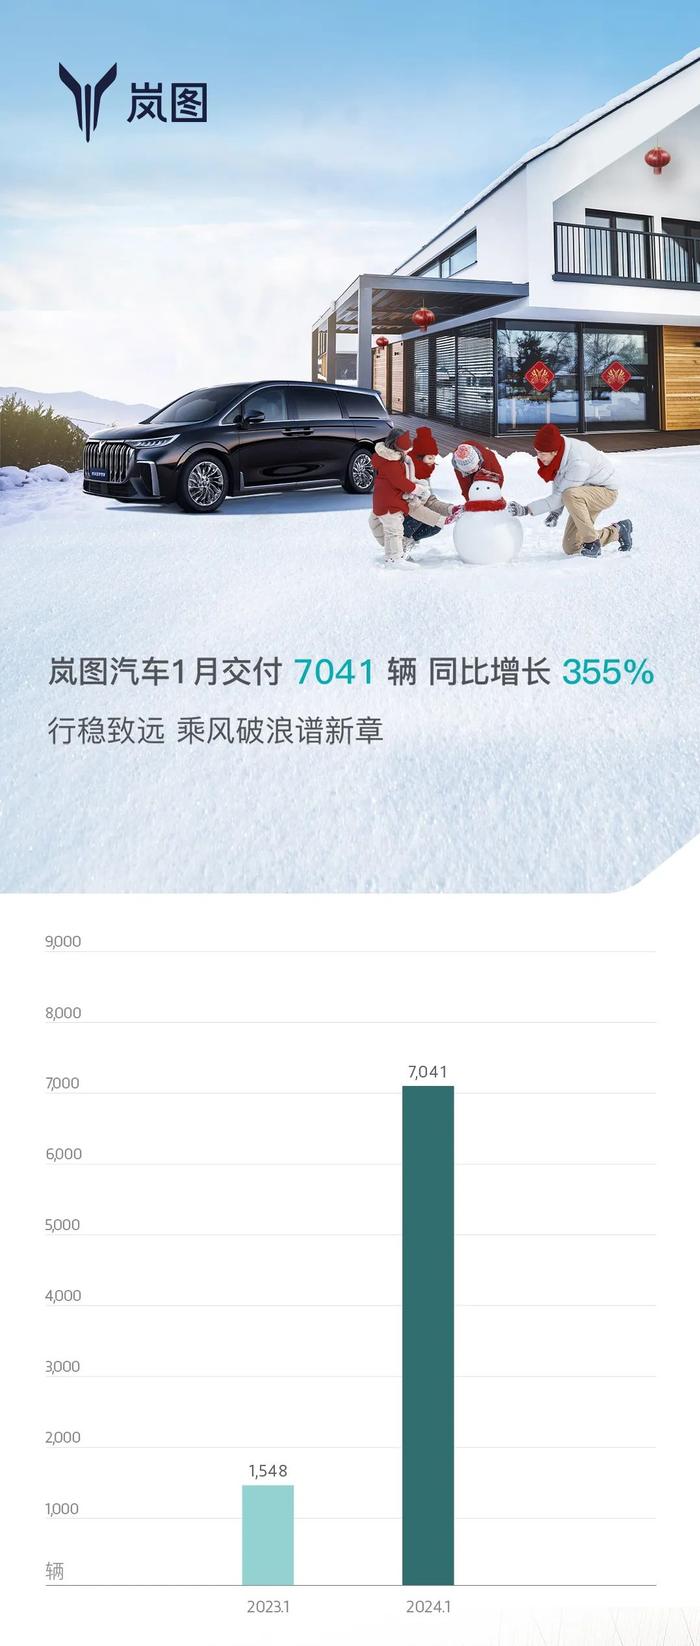 岚图汽车 1 月交付 7041 辆，同比增长 355%